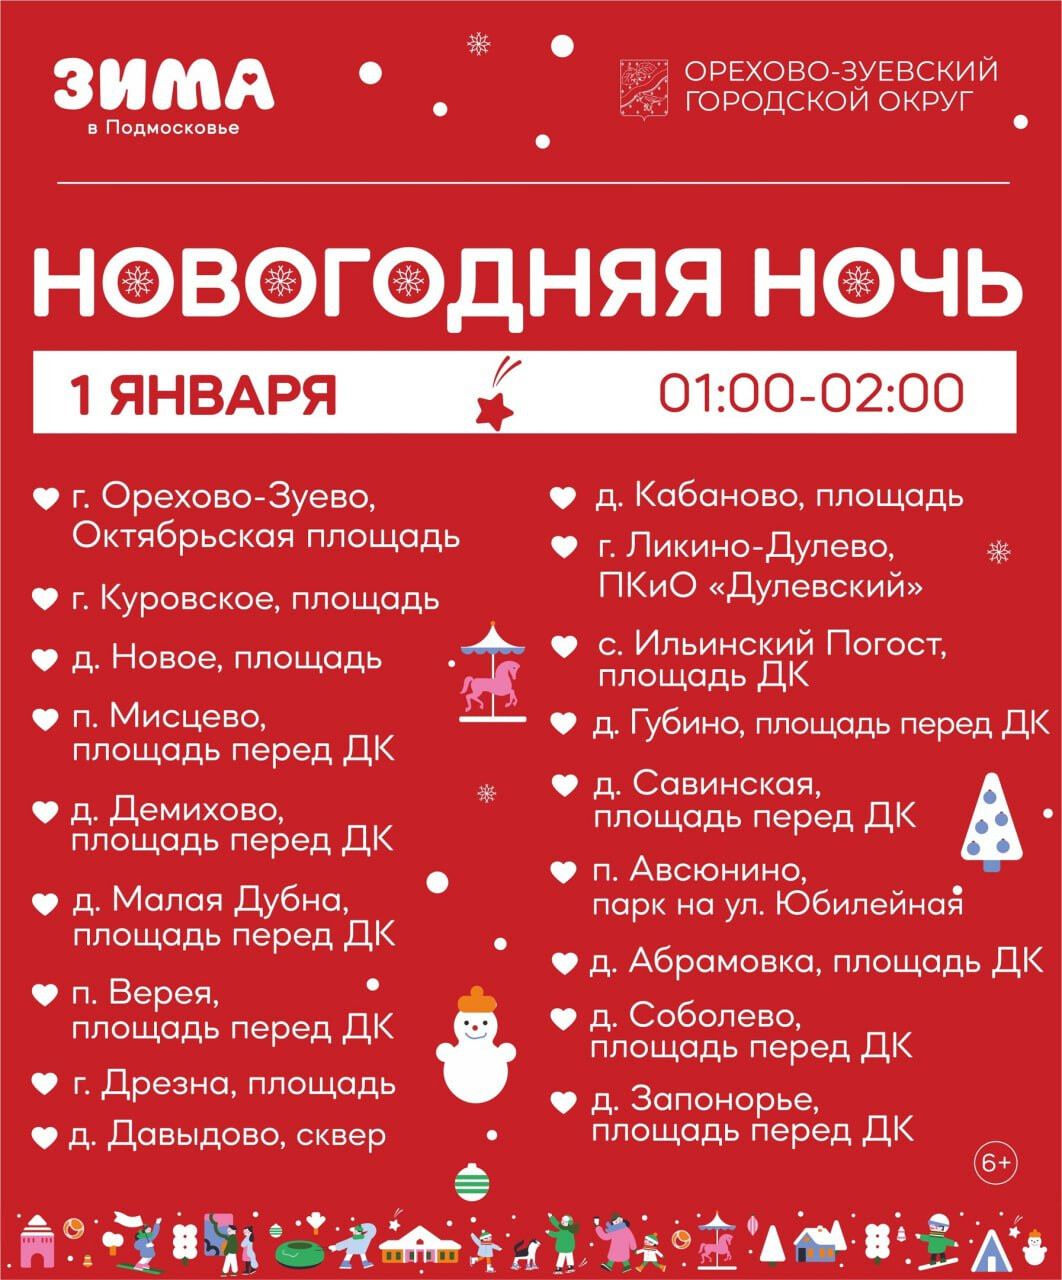 В Новогоднюю ночь 18 праздничных площадок будут работать в Орехово-Зуевском округе